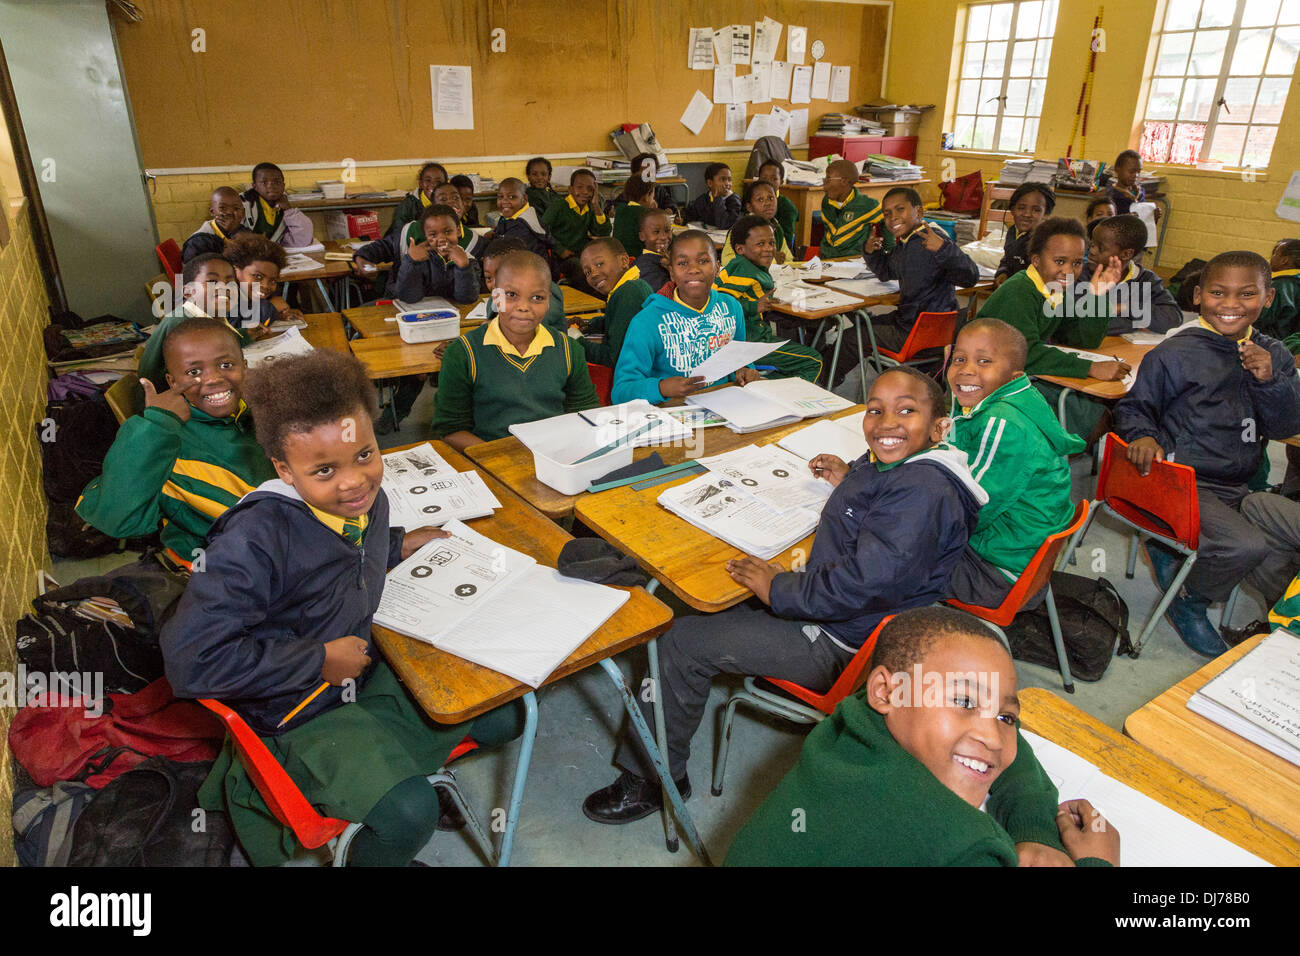 L'Afrique du Sud, Cape Town, Guguletu Township. Intshinga les enfants de l'école primaire, principalement Xhosa groupe ethnique. Banque D'Images